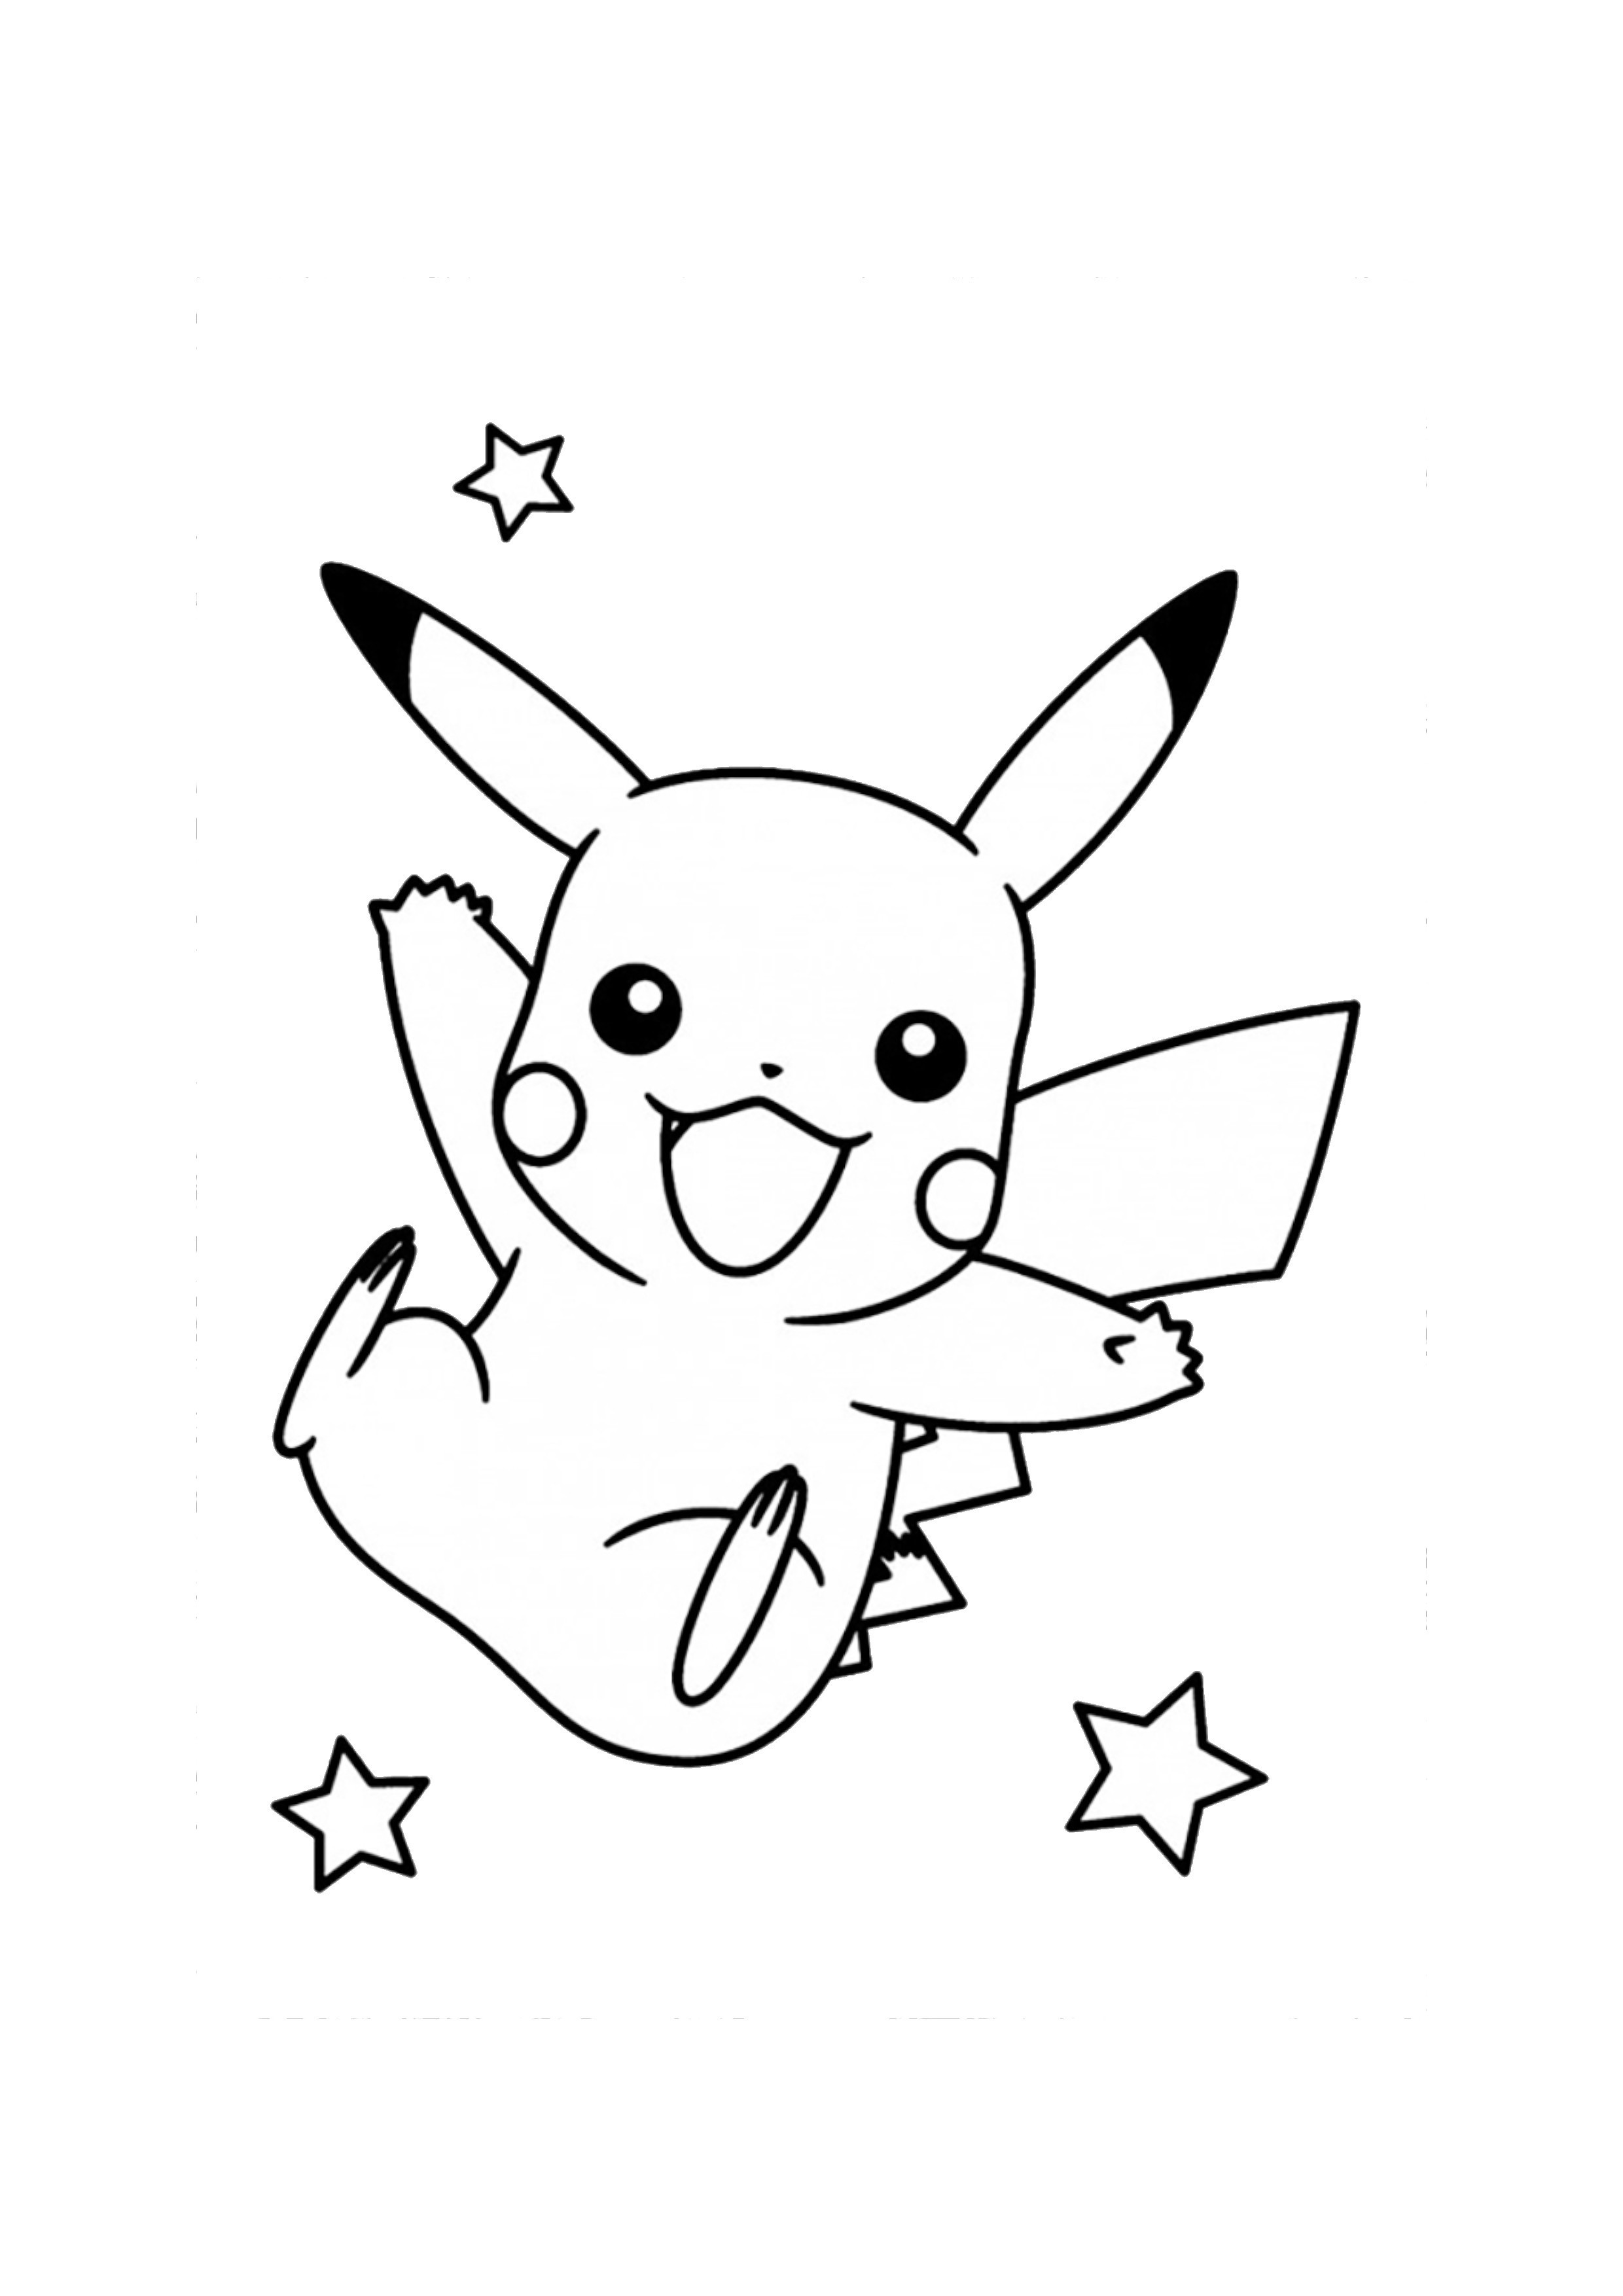 Tranh tô màu Pikachu dễ thương - Tải miễn phí